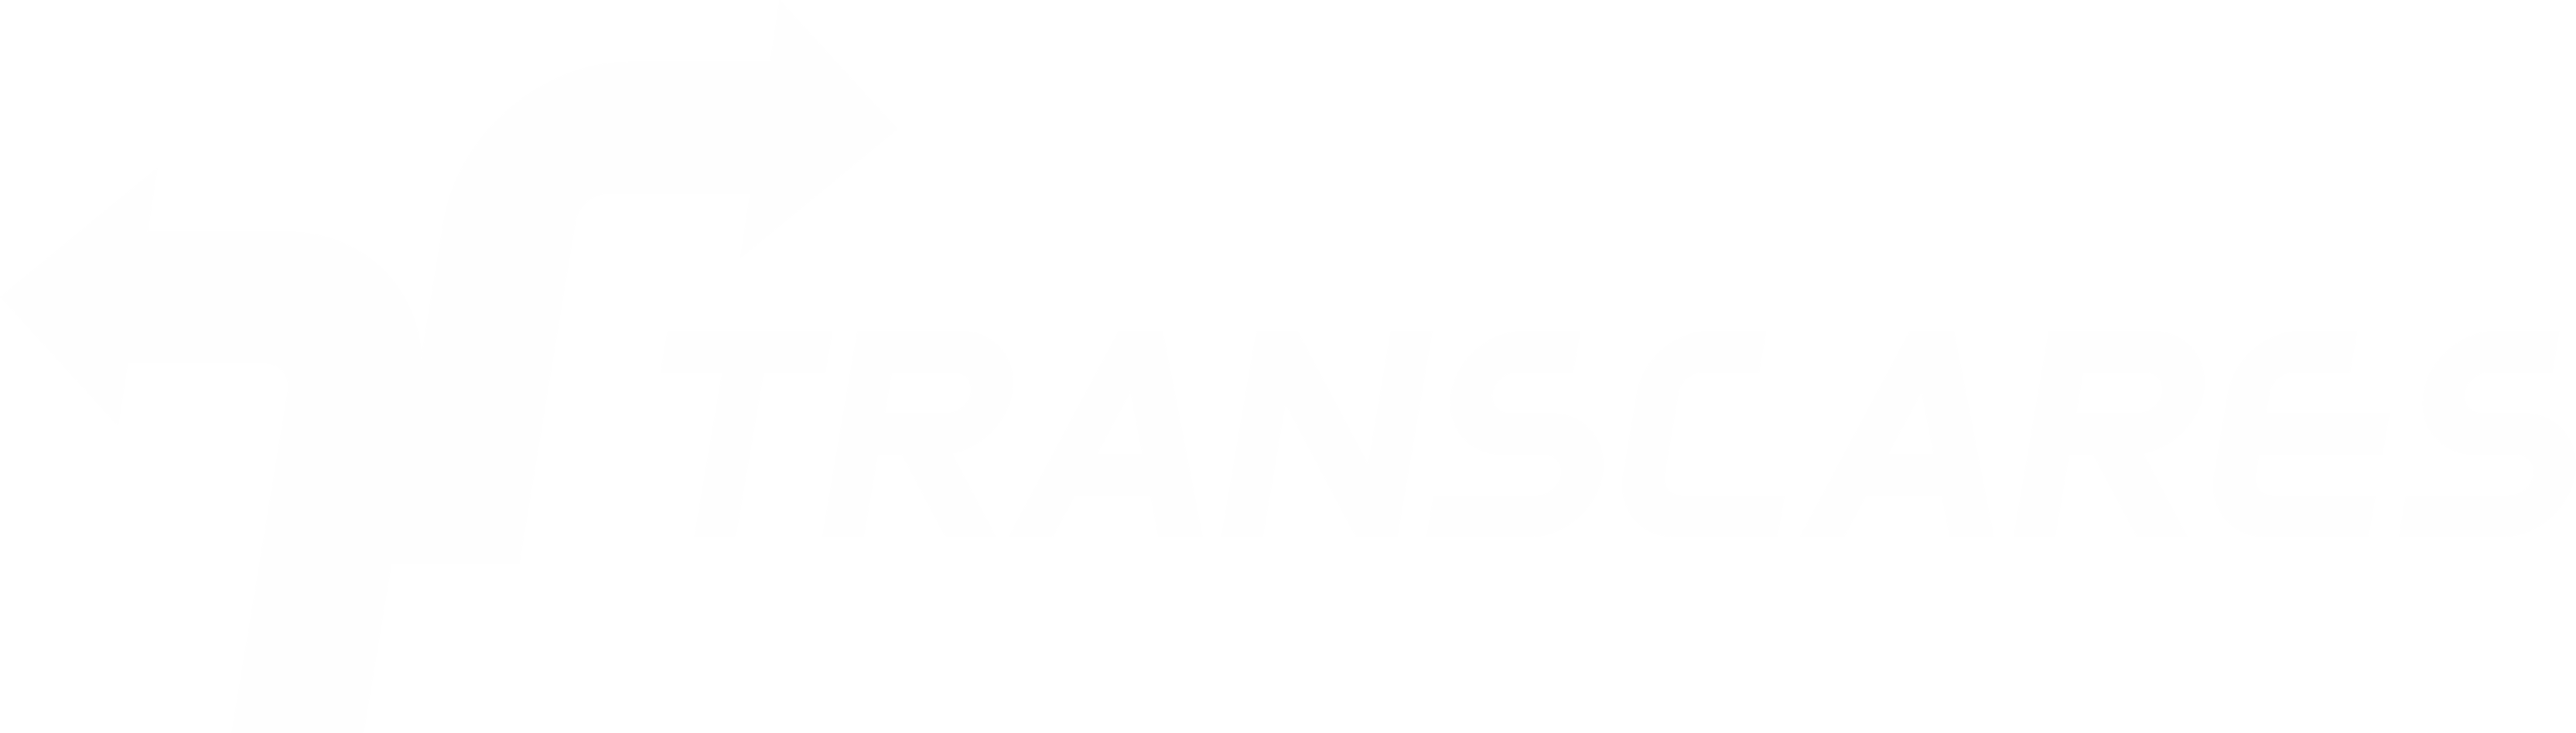 Logo TRANSCARES na cor cinza